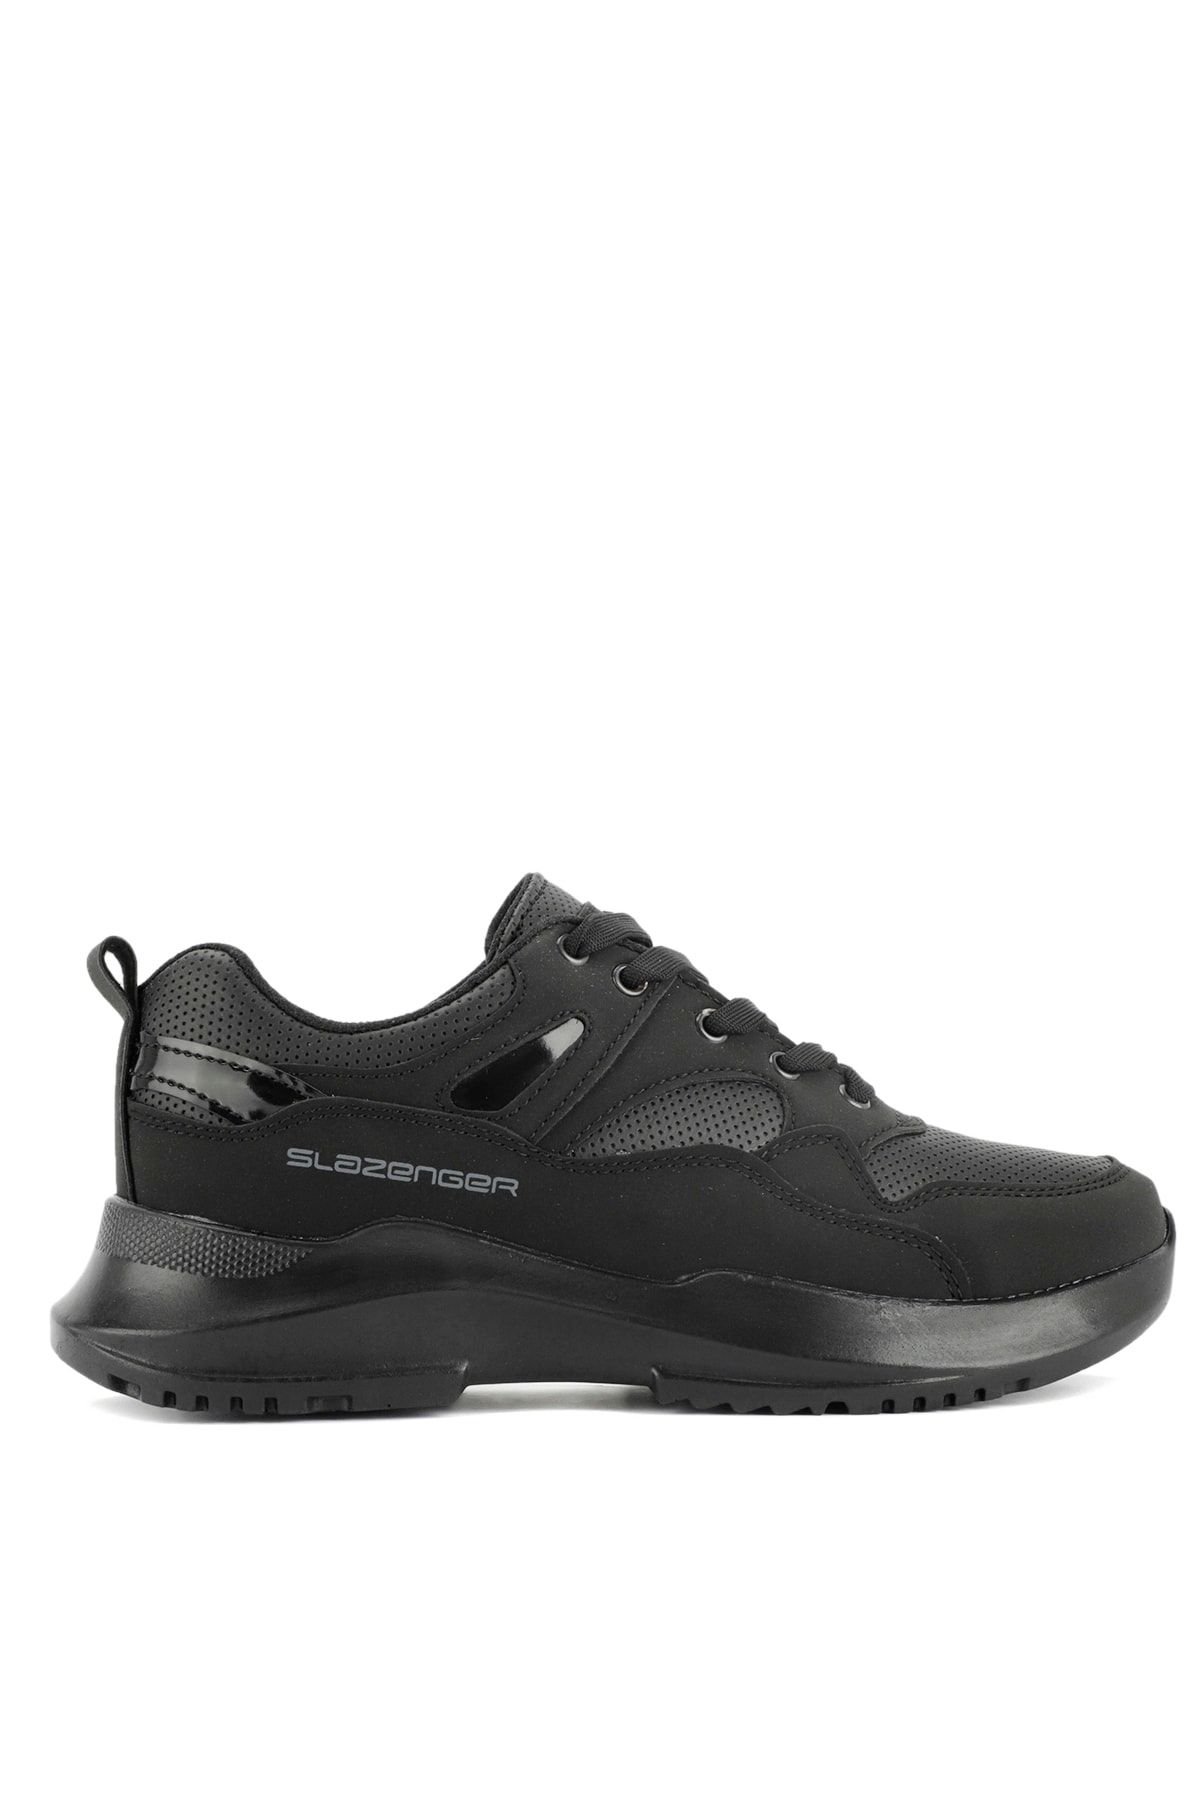 Slazenger KAREN Sneaker Kadın Ayakkabı Siyah / Siyah